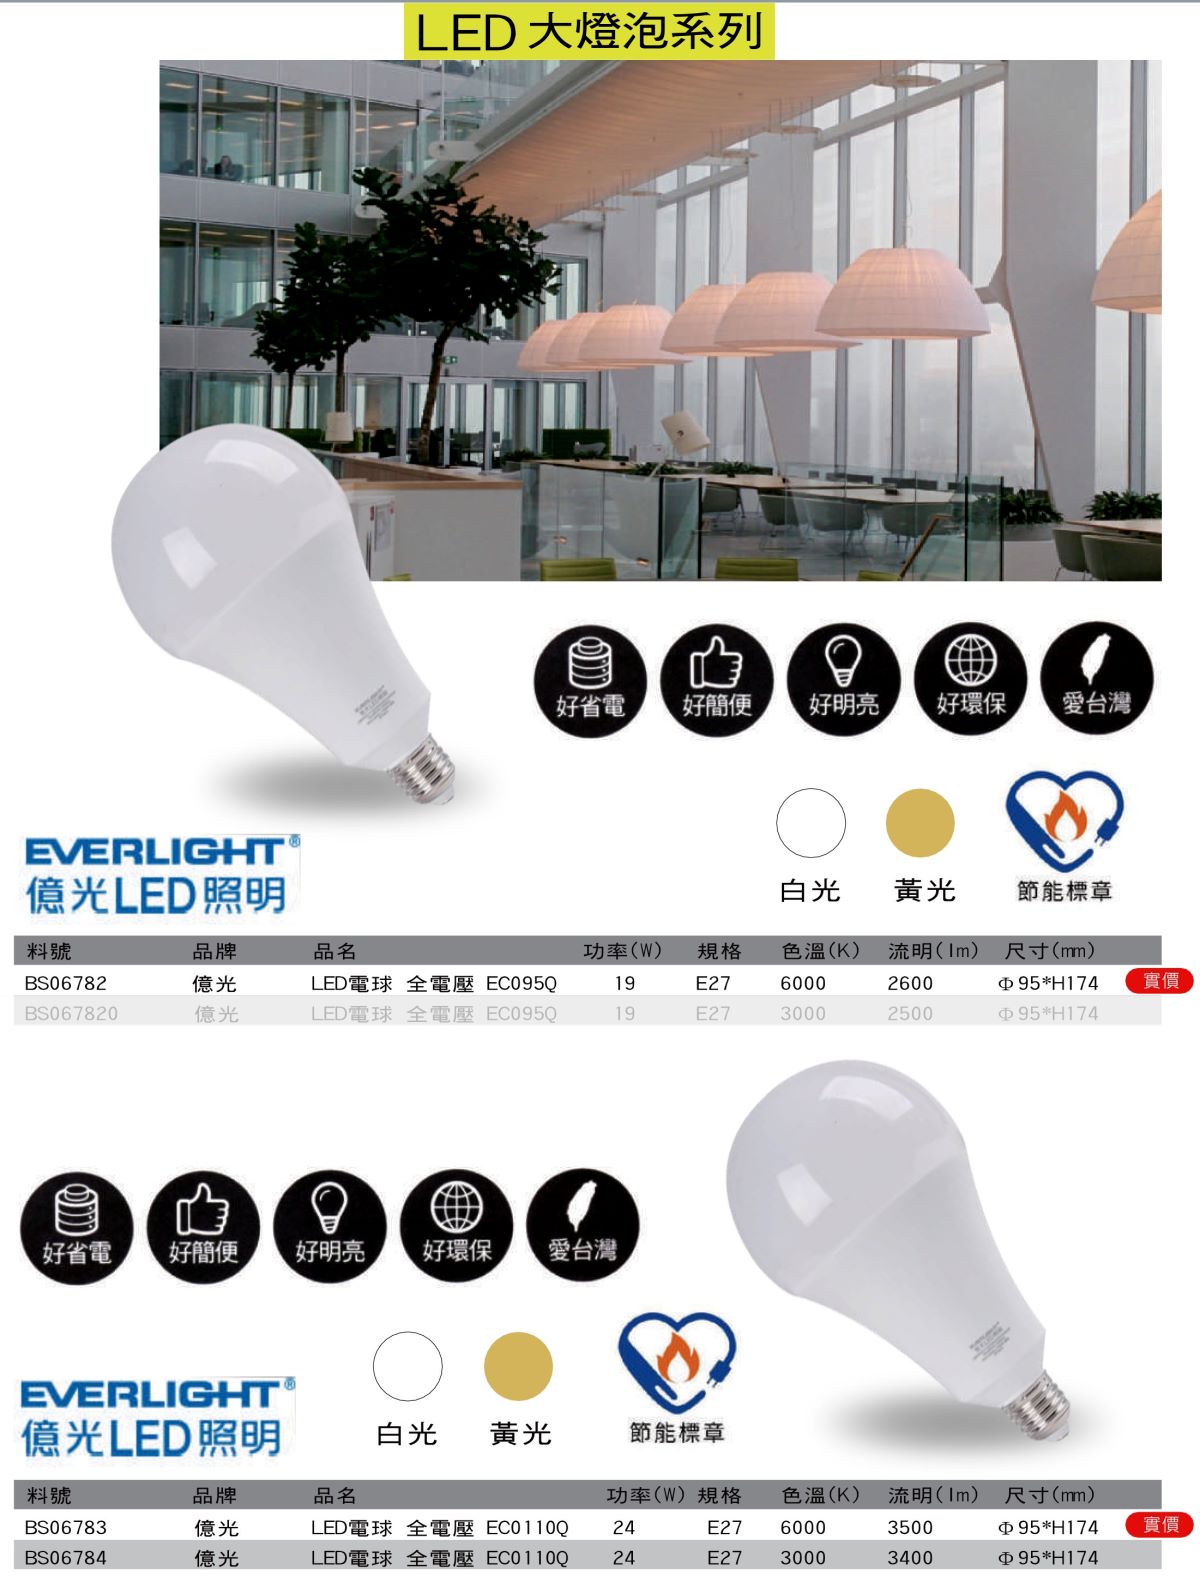 LED照明設備、LED燈具．LED燈管．LED燈泡～億光LED電球